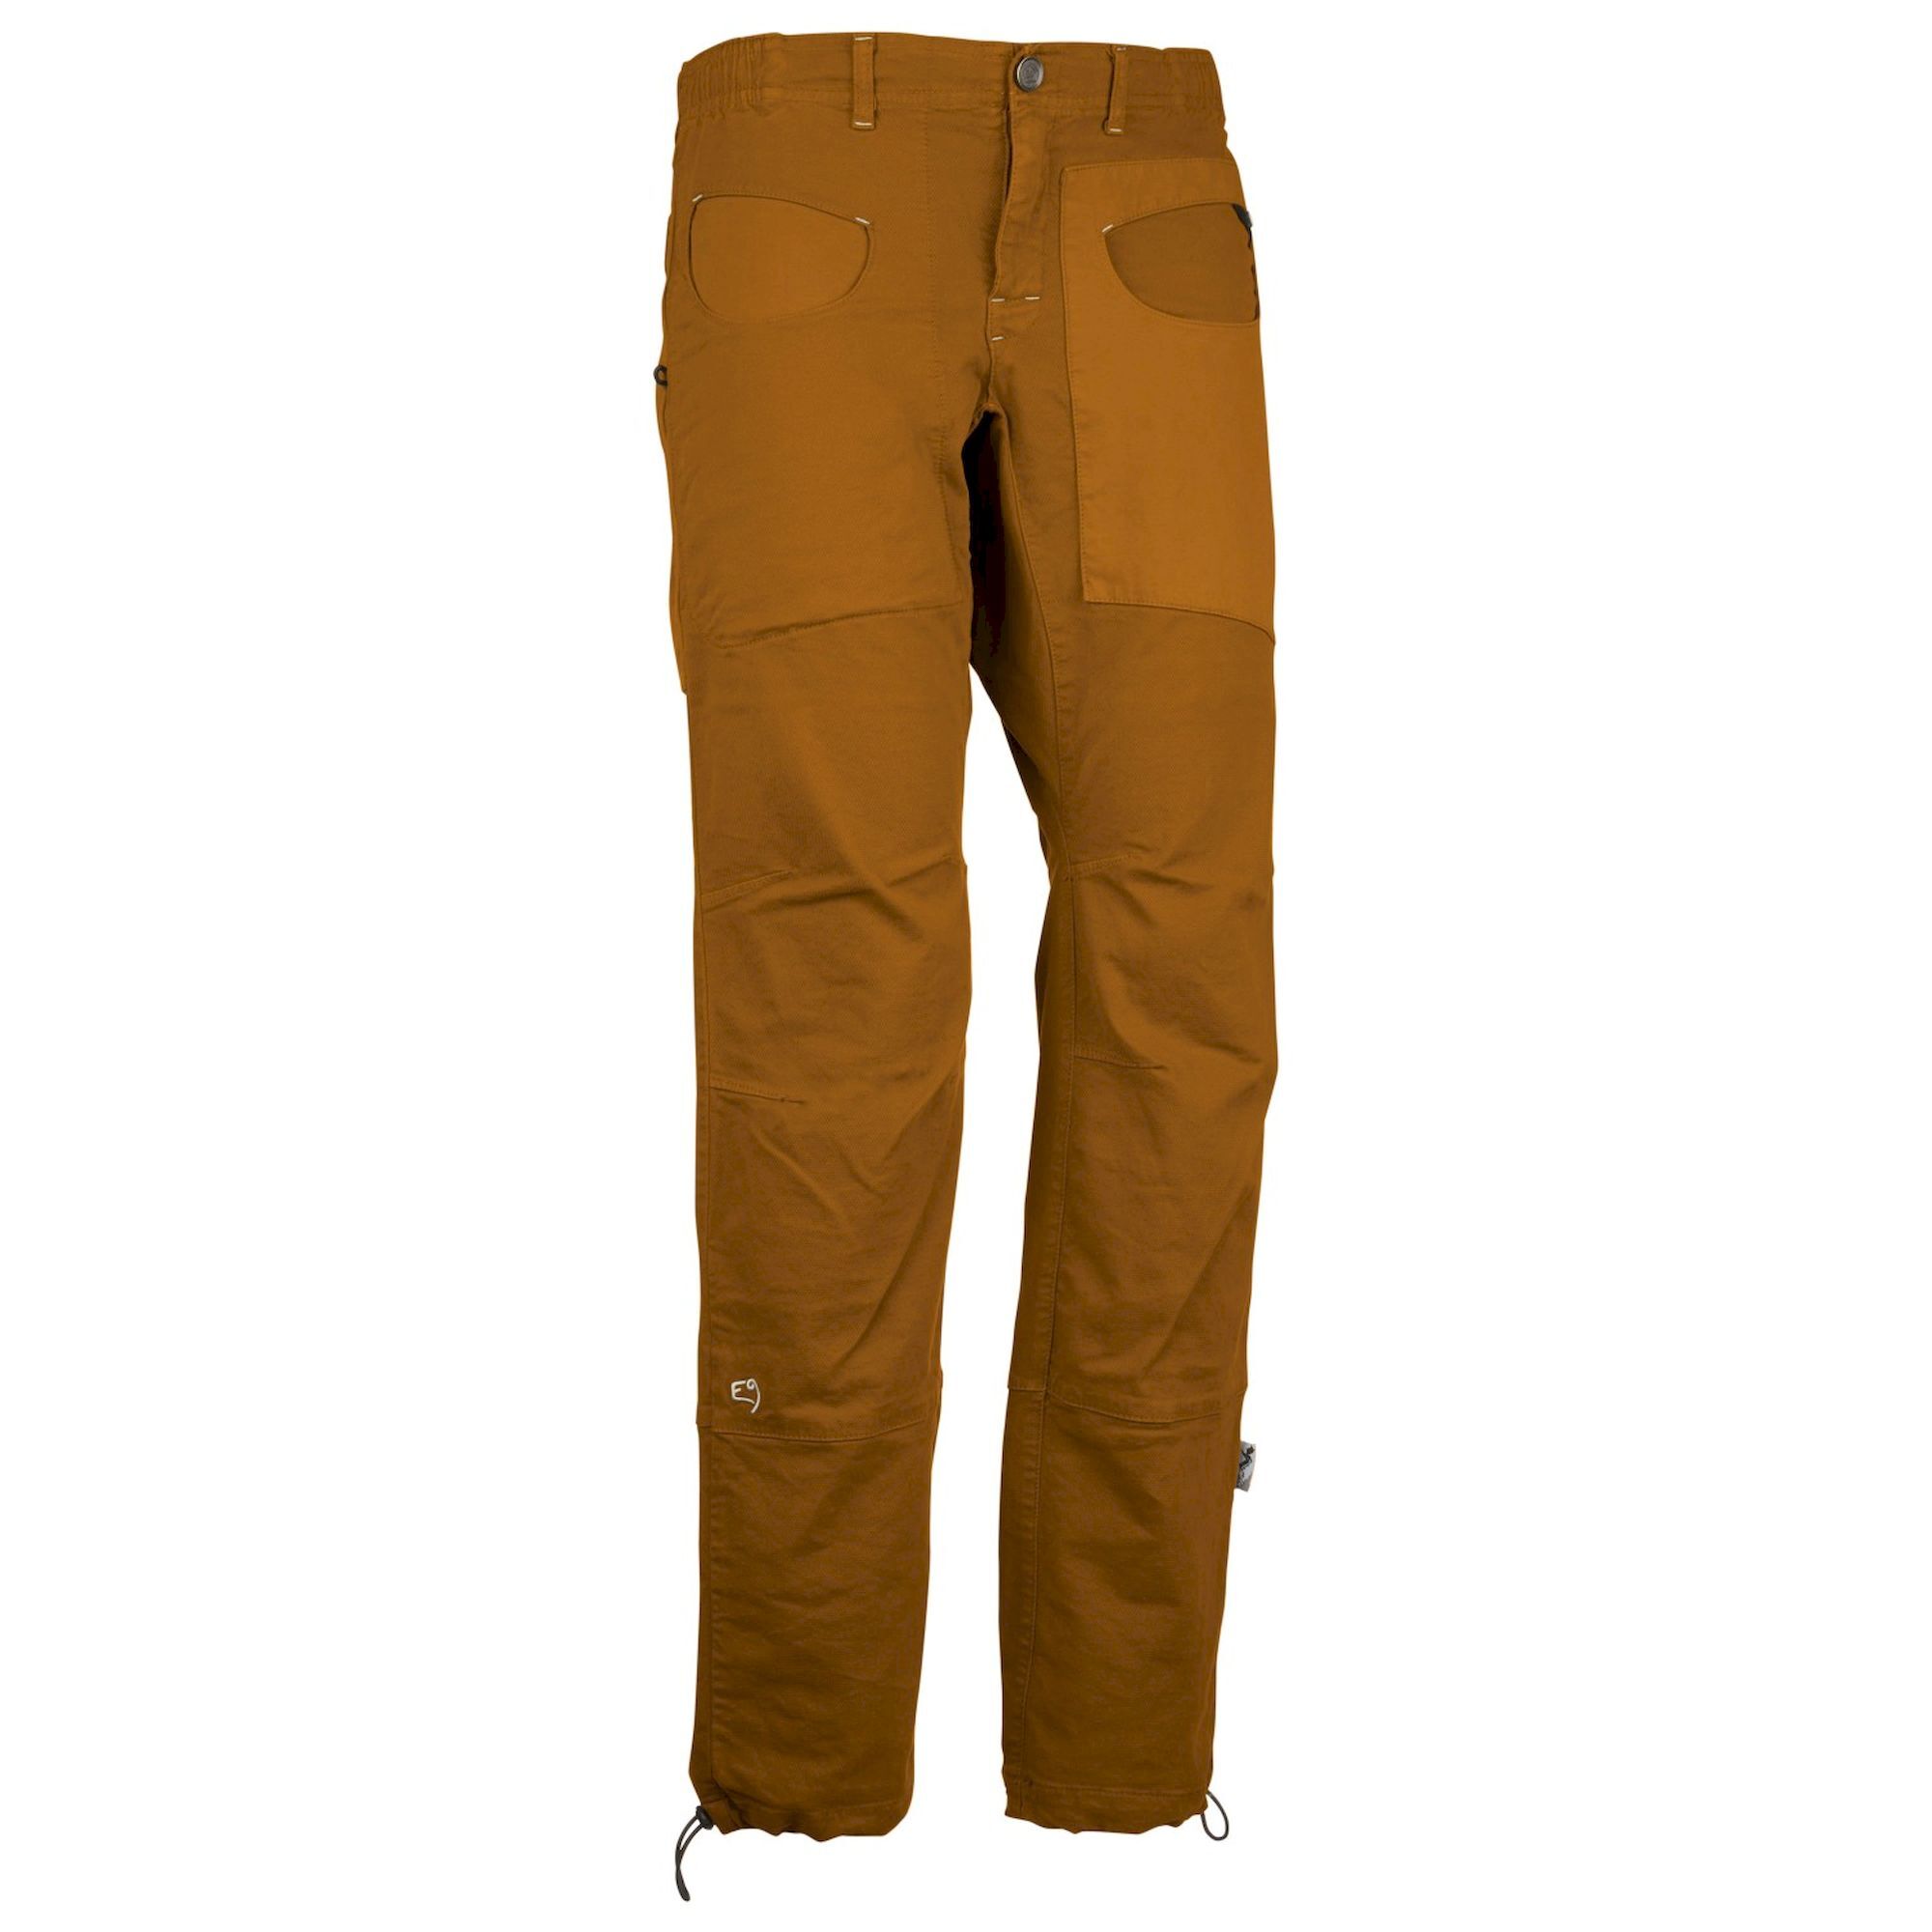 E9 Blat2.0 - Climbing trousers - Men's